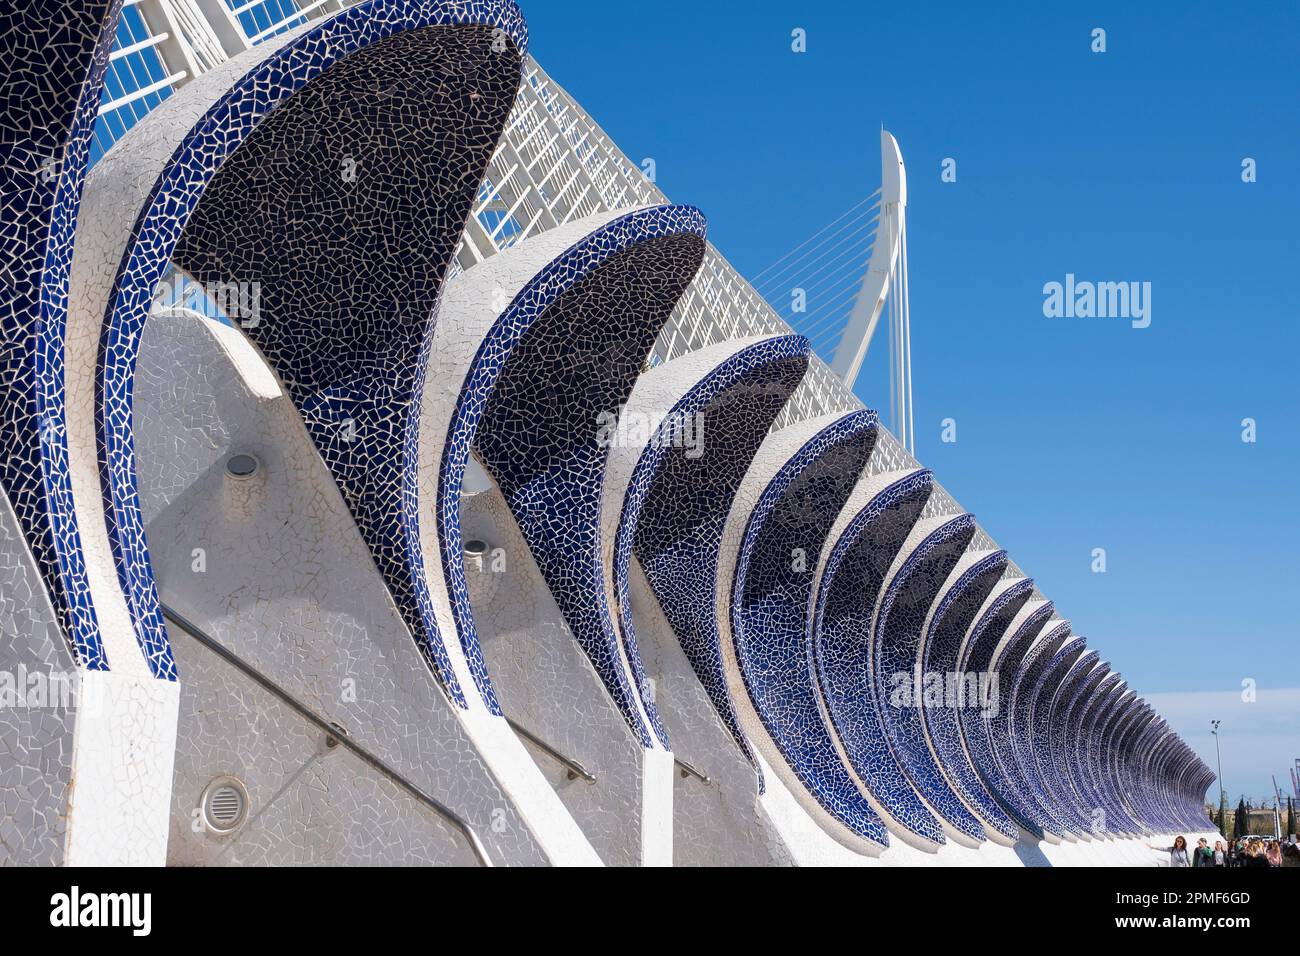 Spain, Valencia, City of Arts and Sciences (Ciudad de las Artes y las Ciencias), cultural complex designed by architect Santiago Calatrava, Umbracle (public garden) Stock Photo